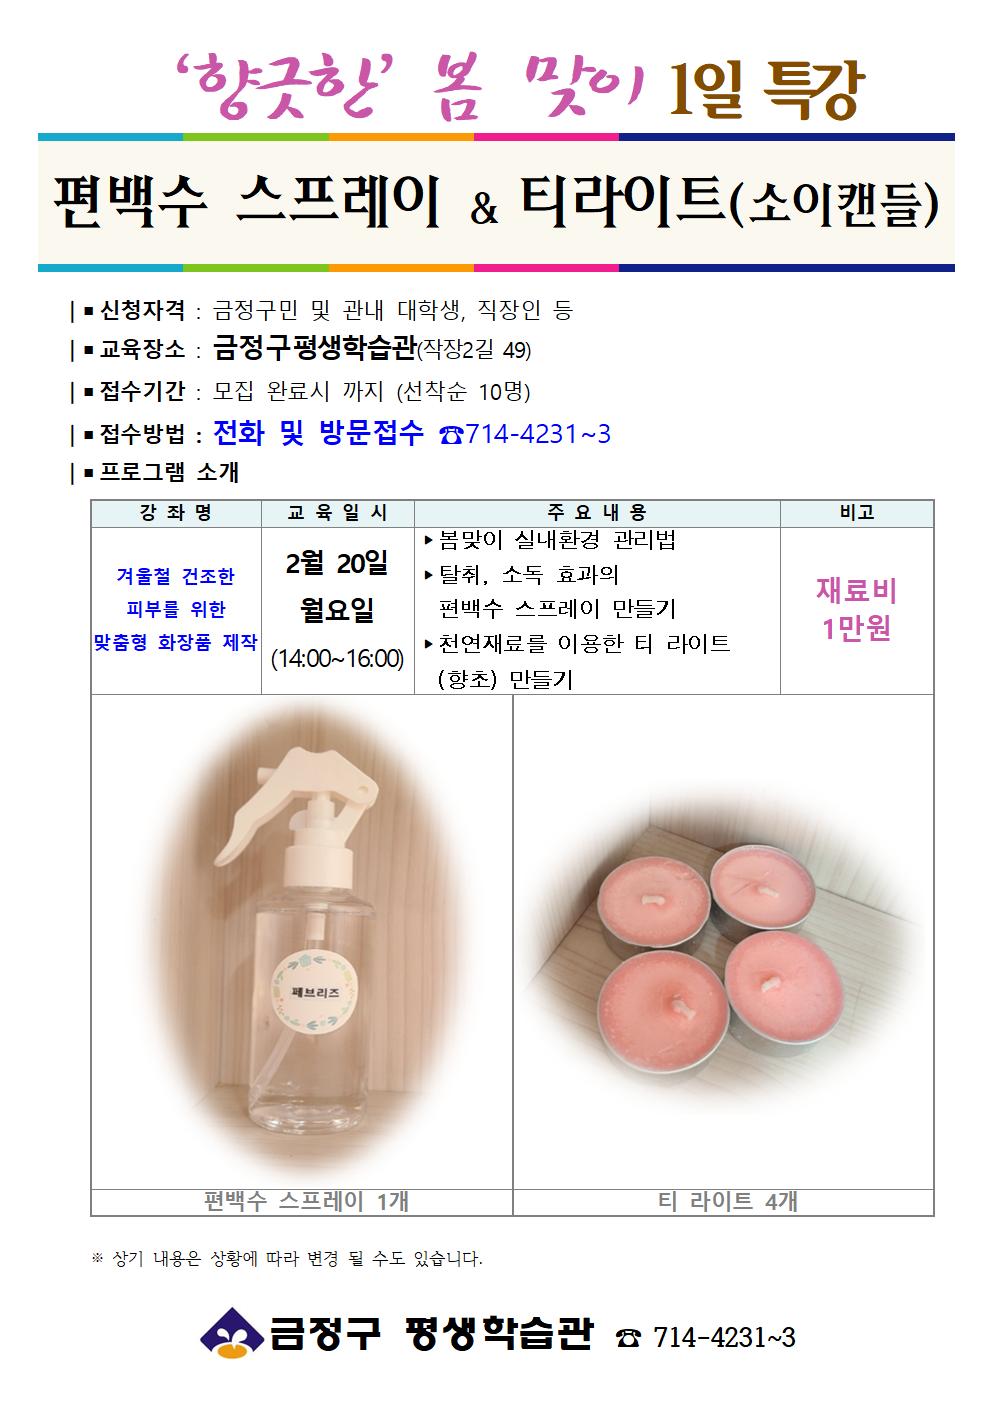 [금정구평생학습관] 봄맞이 1일 특강-편백수 스프레이&티 라이트 만들기